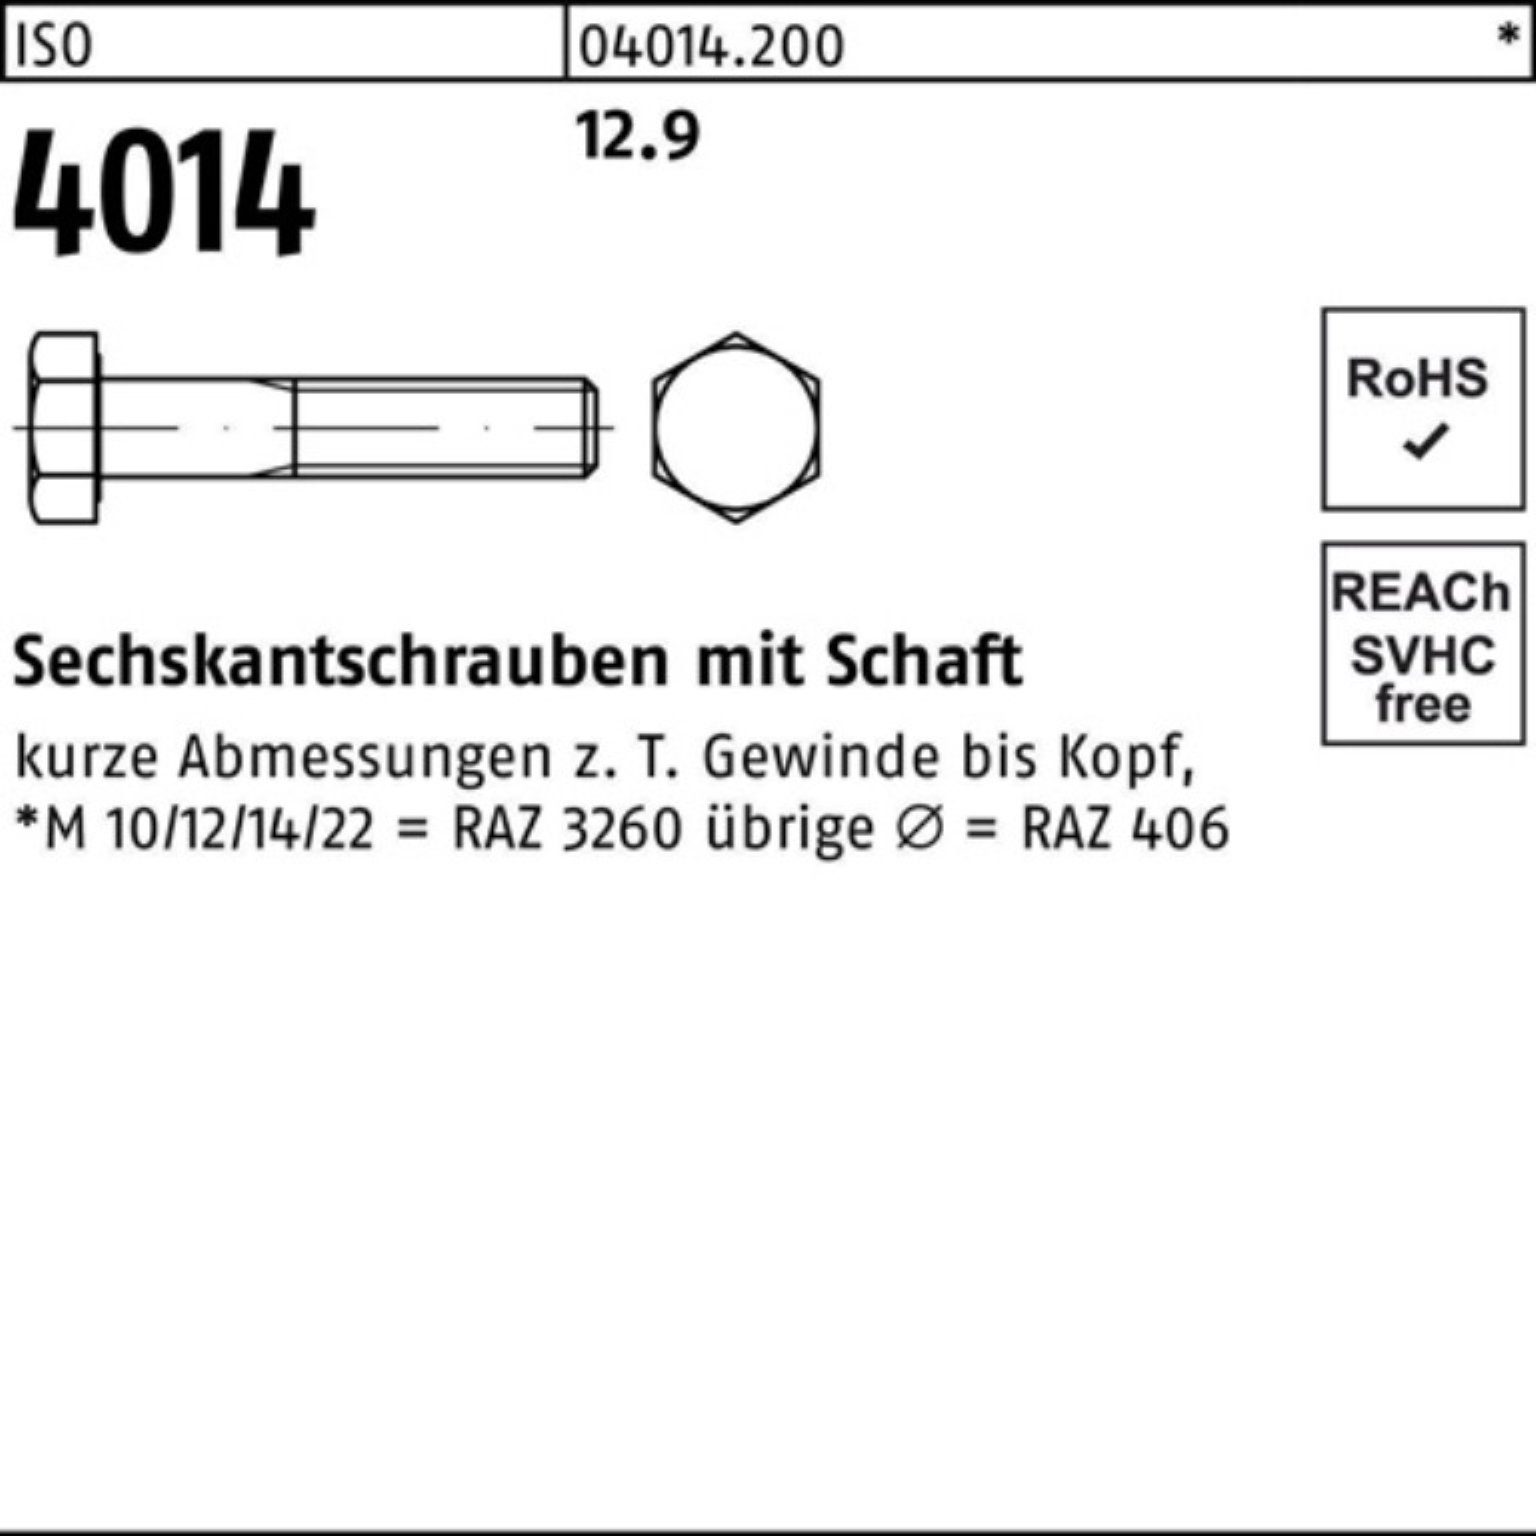 Sechskantschraube 160 25 Stück I Pack 12.9 100er ISO Sechskantschraube Bufab M20x 4014 Schaft